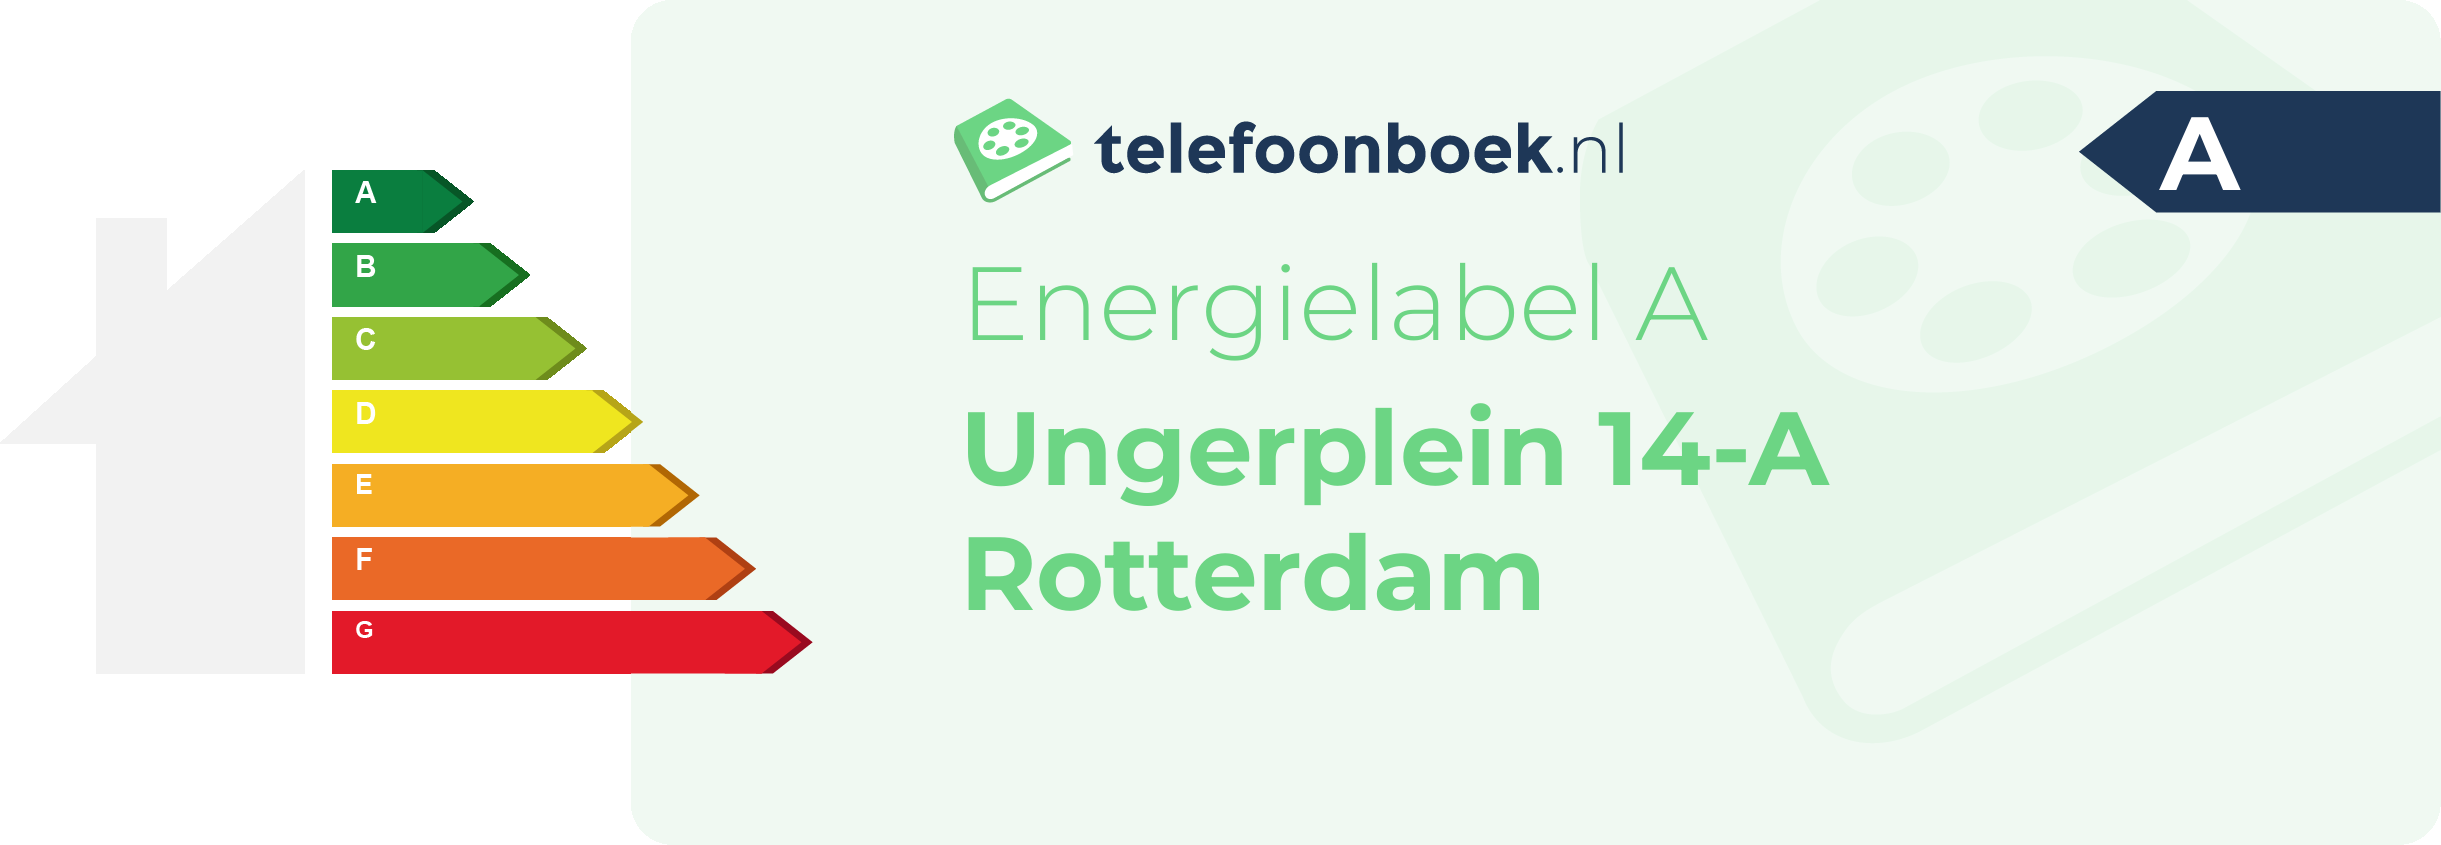 Energielabel Ungerplein 14-A Rotterdam